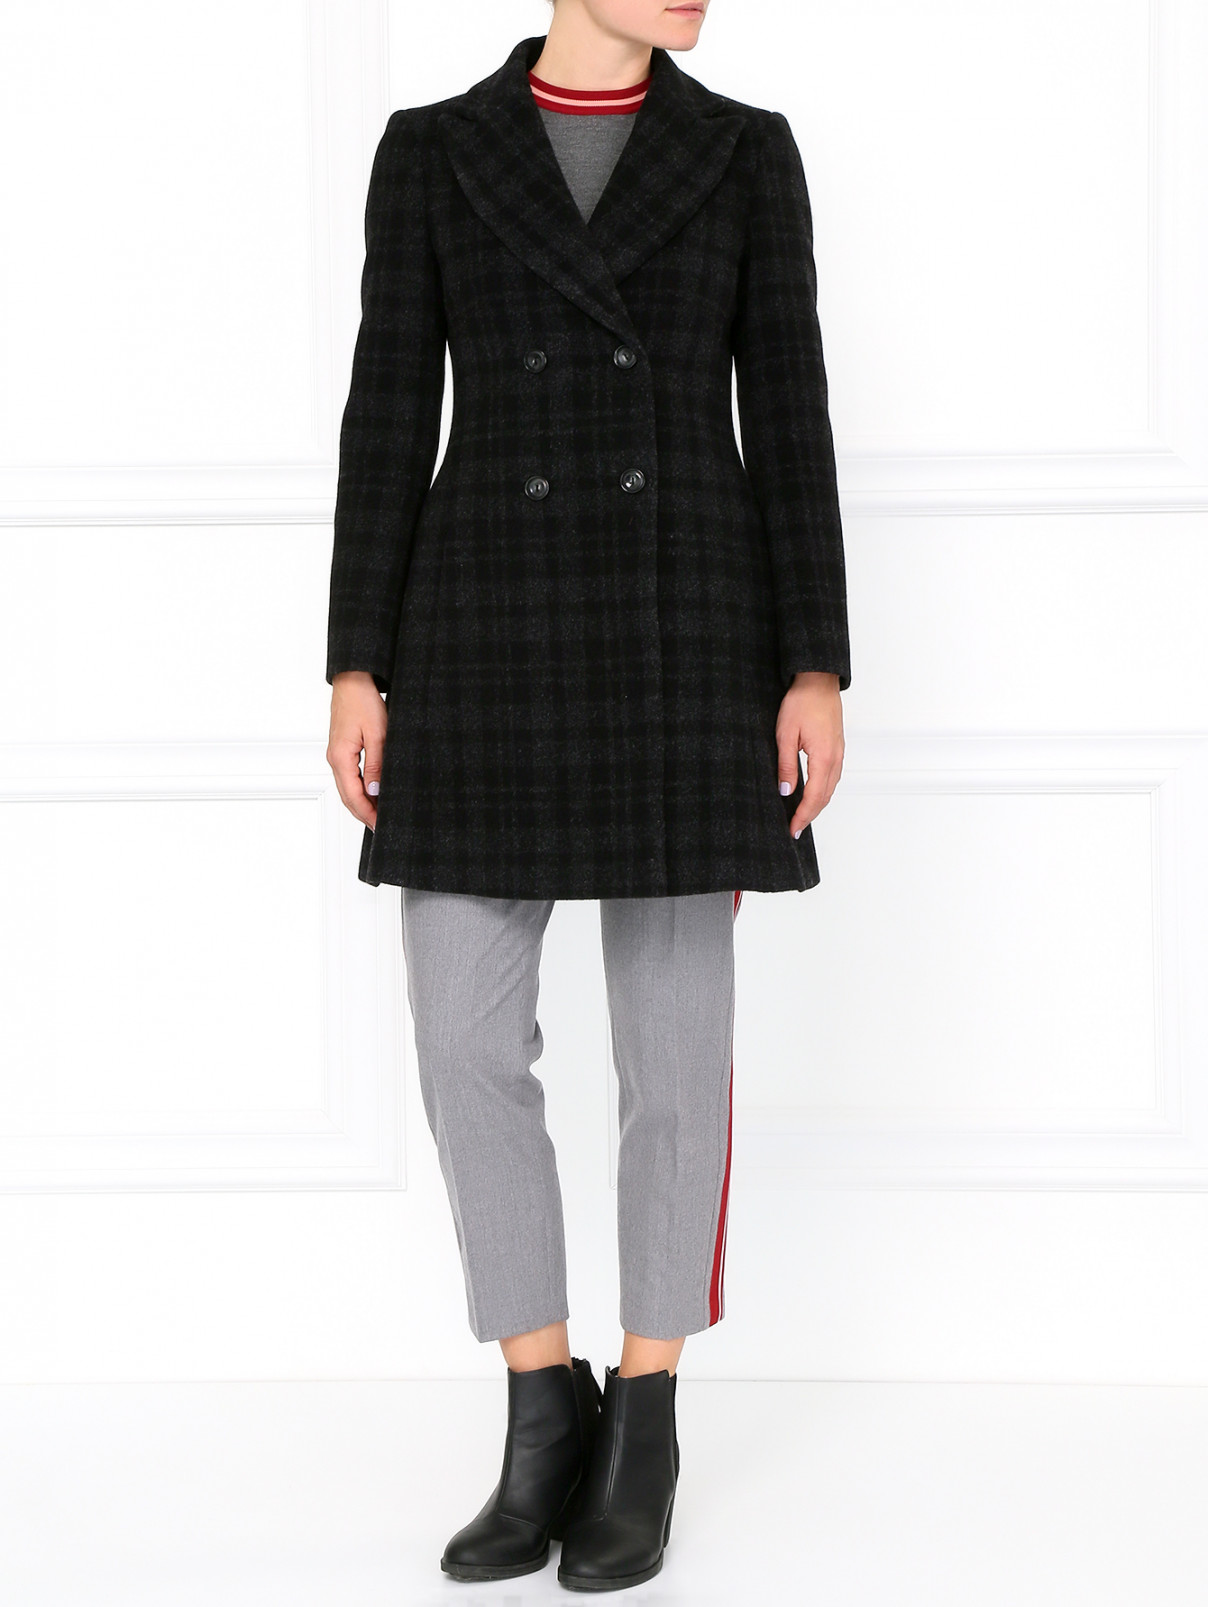 Двубортное пальто с боковыми карманами Isola Marras  –  Модель Общий вид  – Цвет:  Черный